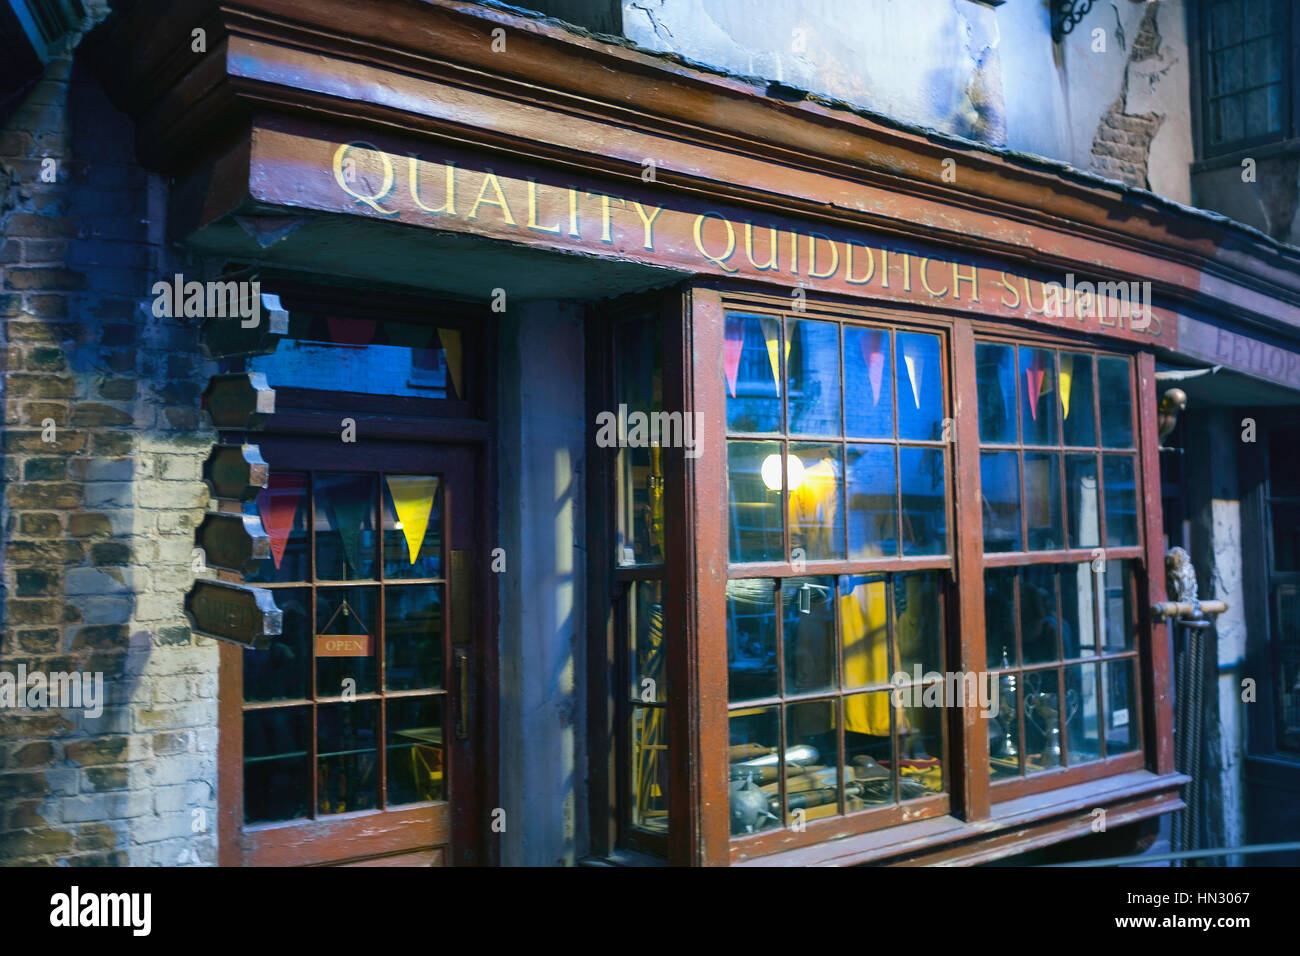 Qualità forniture di Quidditch Shop di Harry Potter Warner Brothers Tour dello Studio Foto Stock